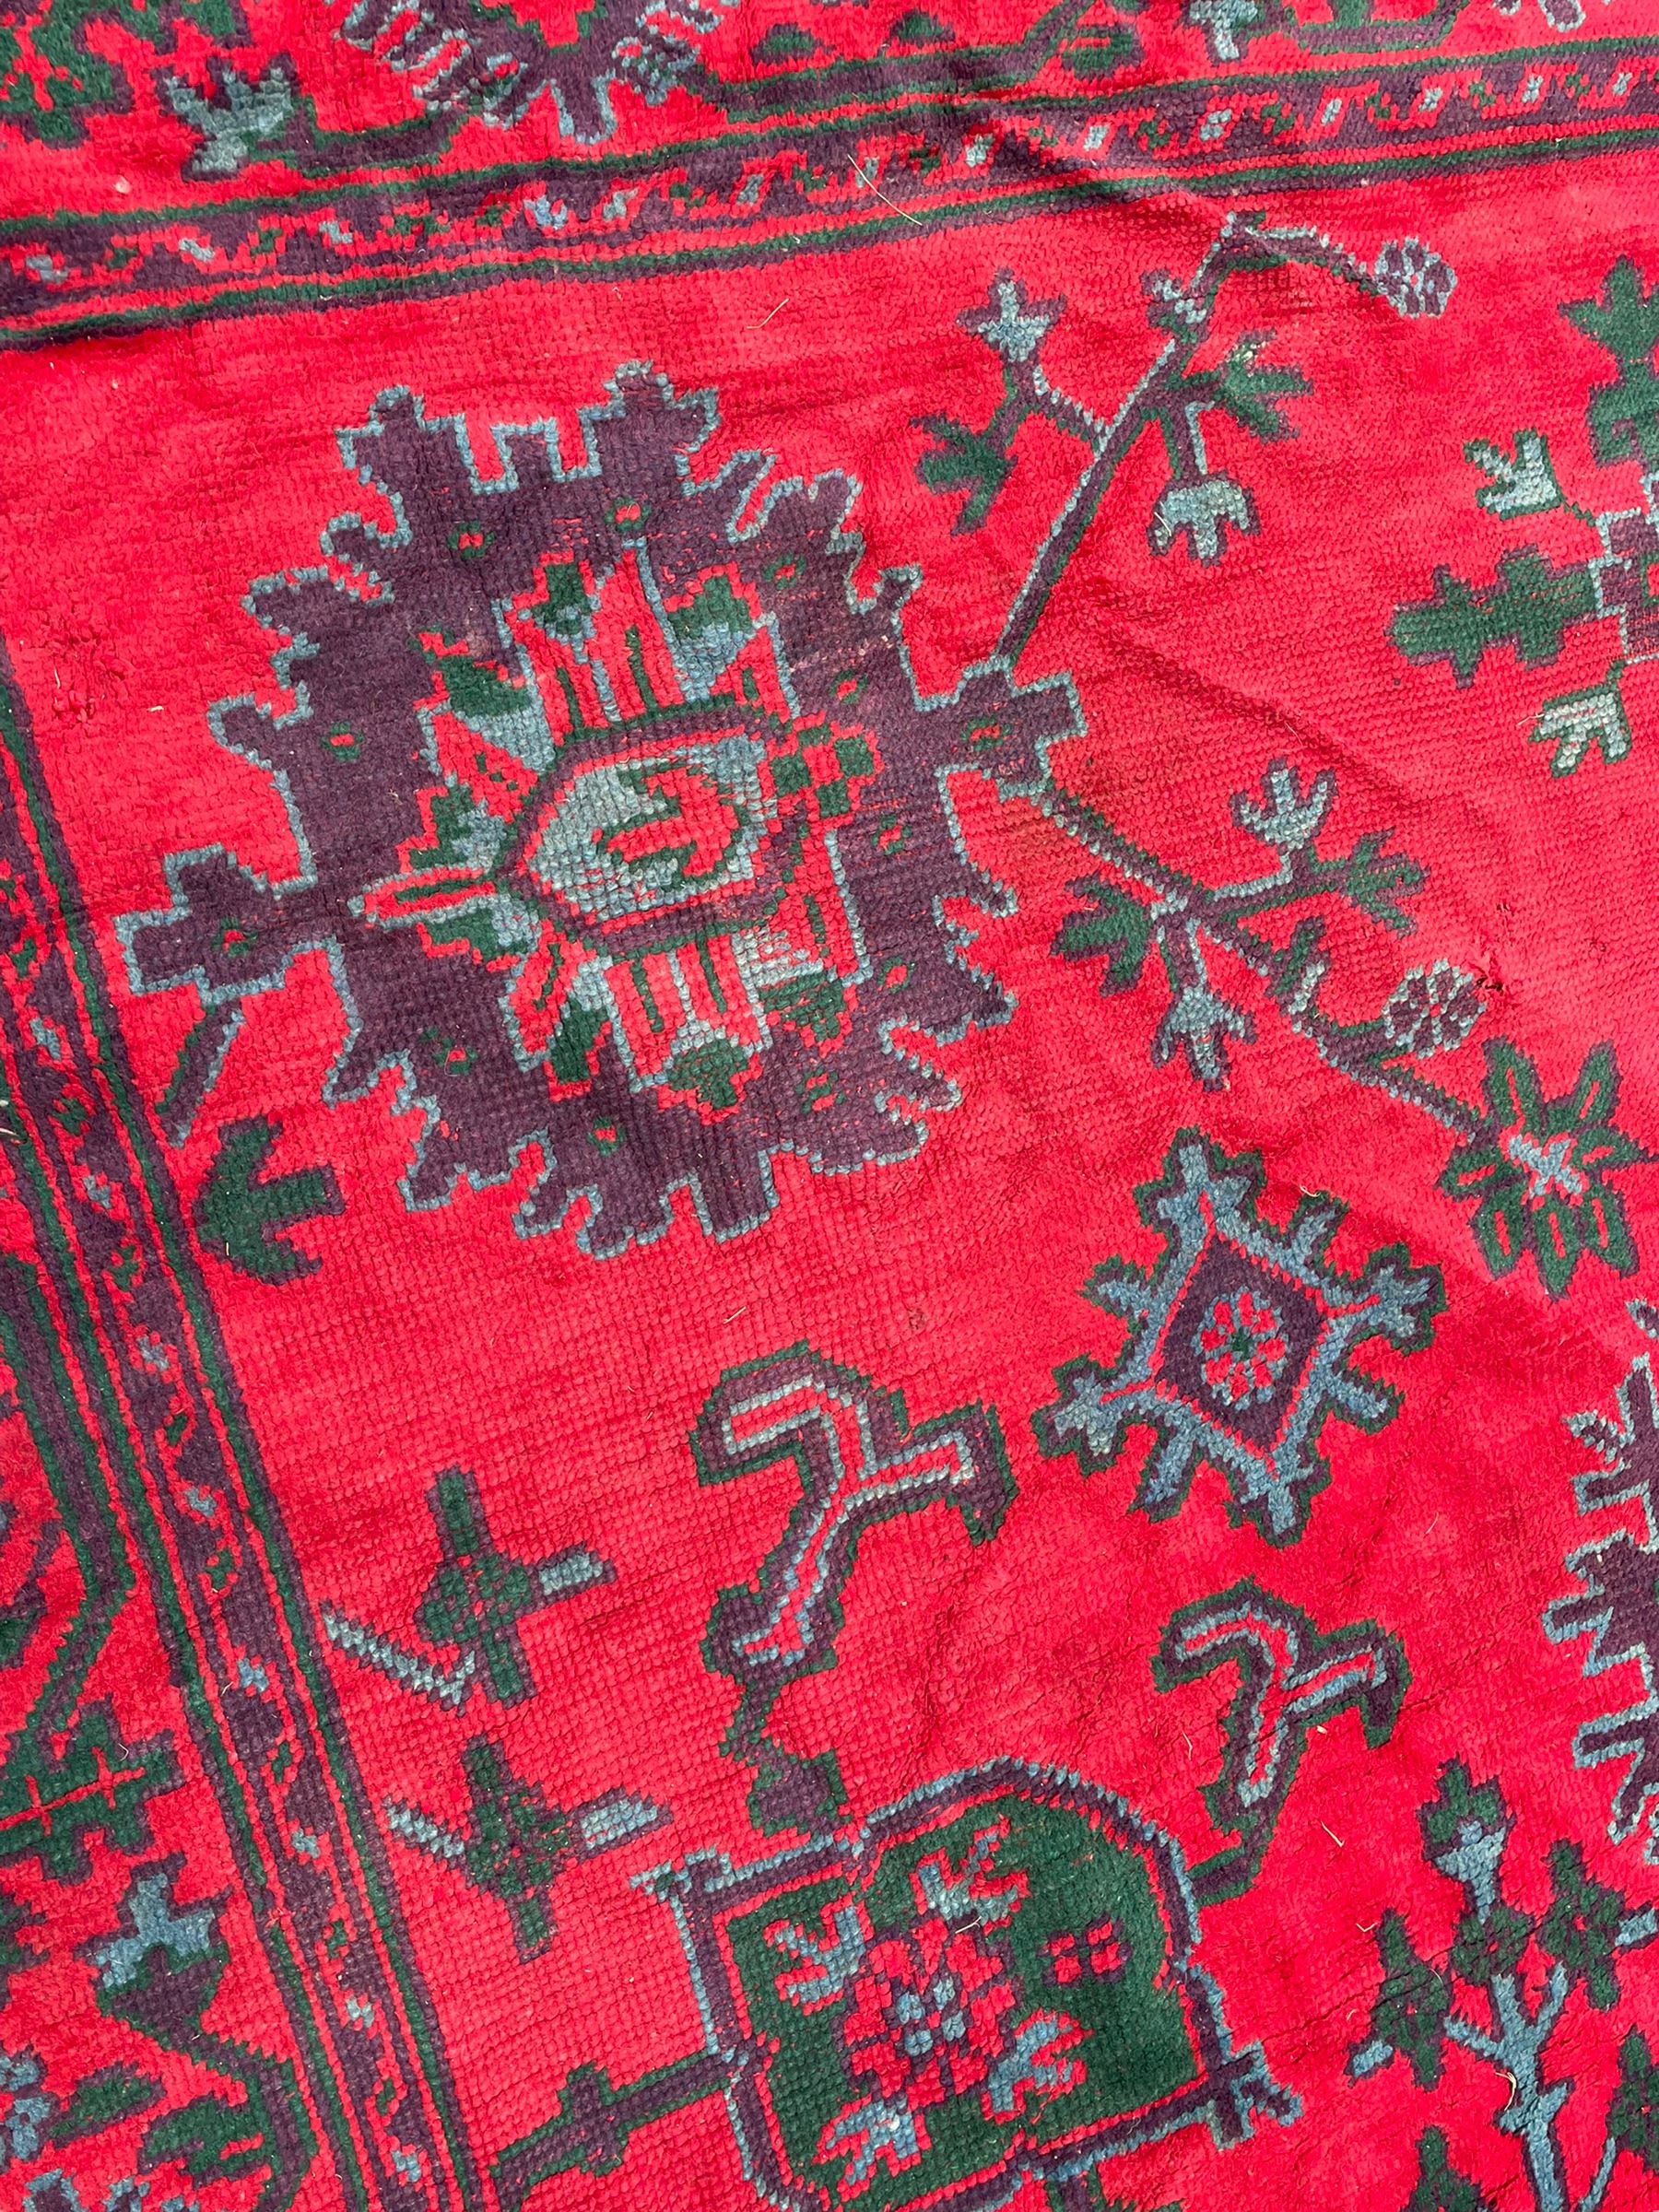 Early 20th century Western Anatolia Turkish Oushak crimson ground carpet - Image 3 of 10